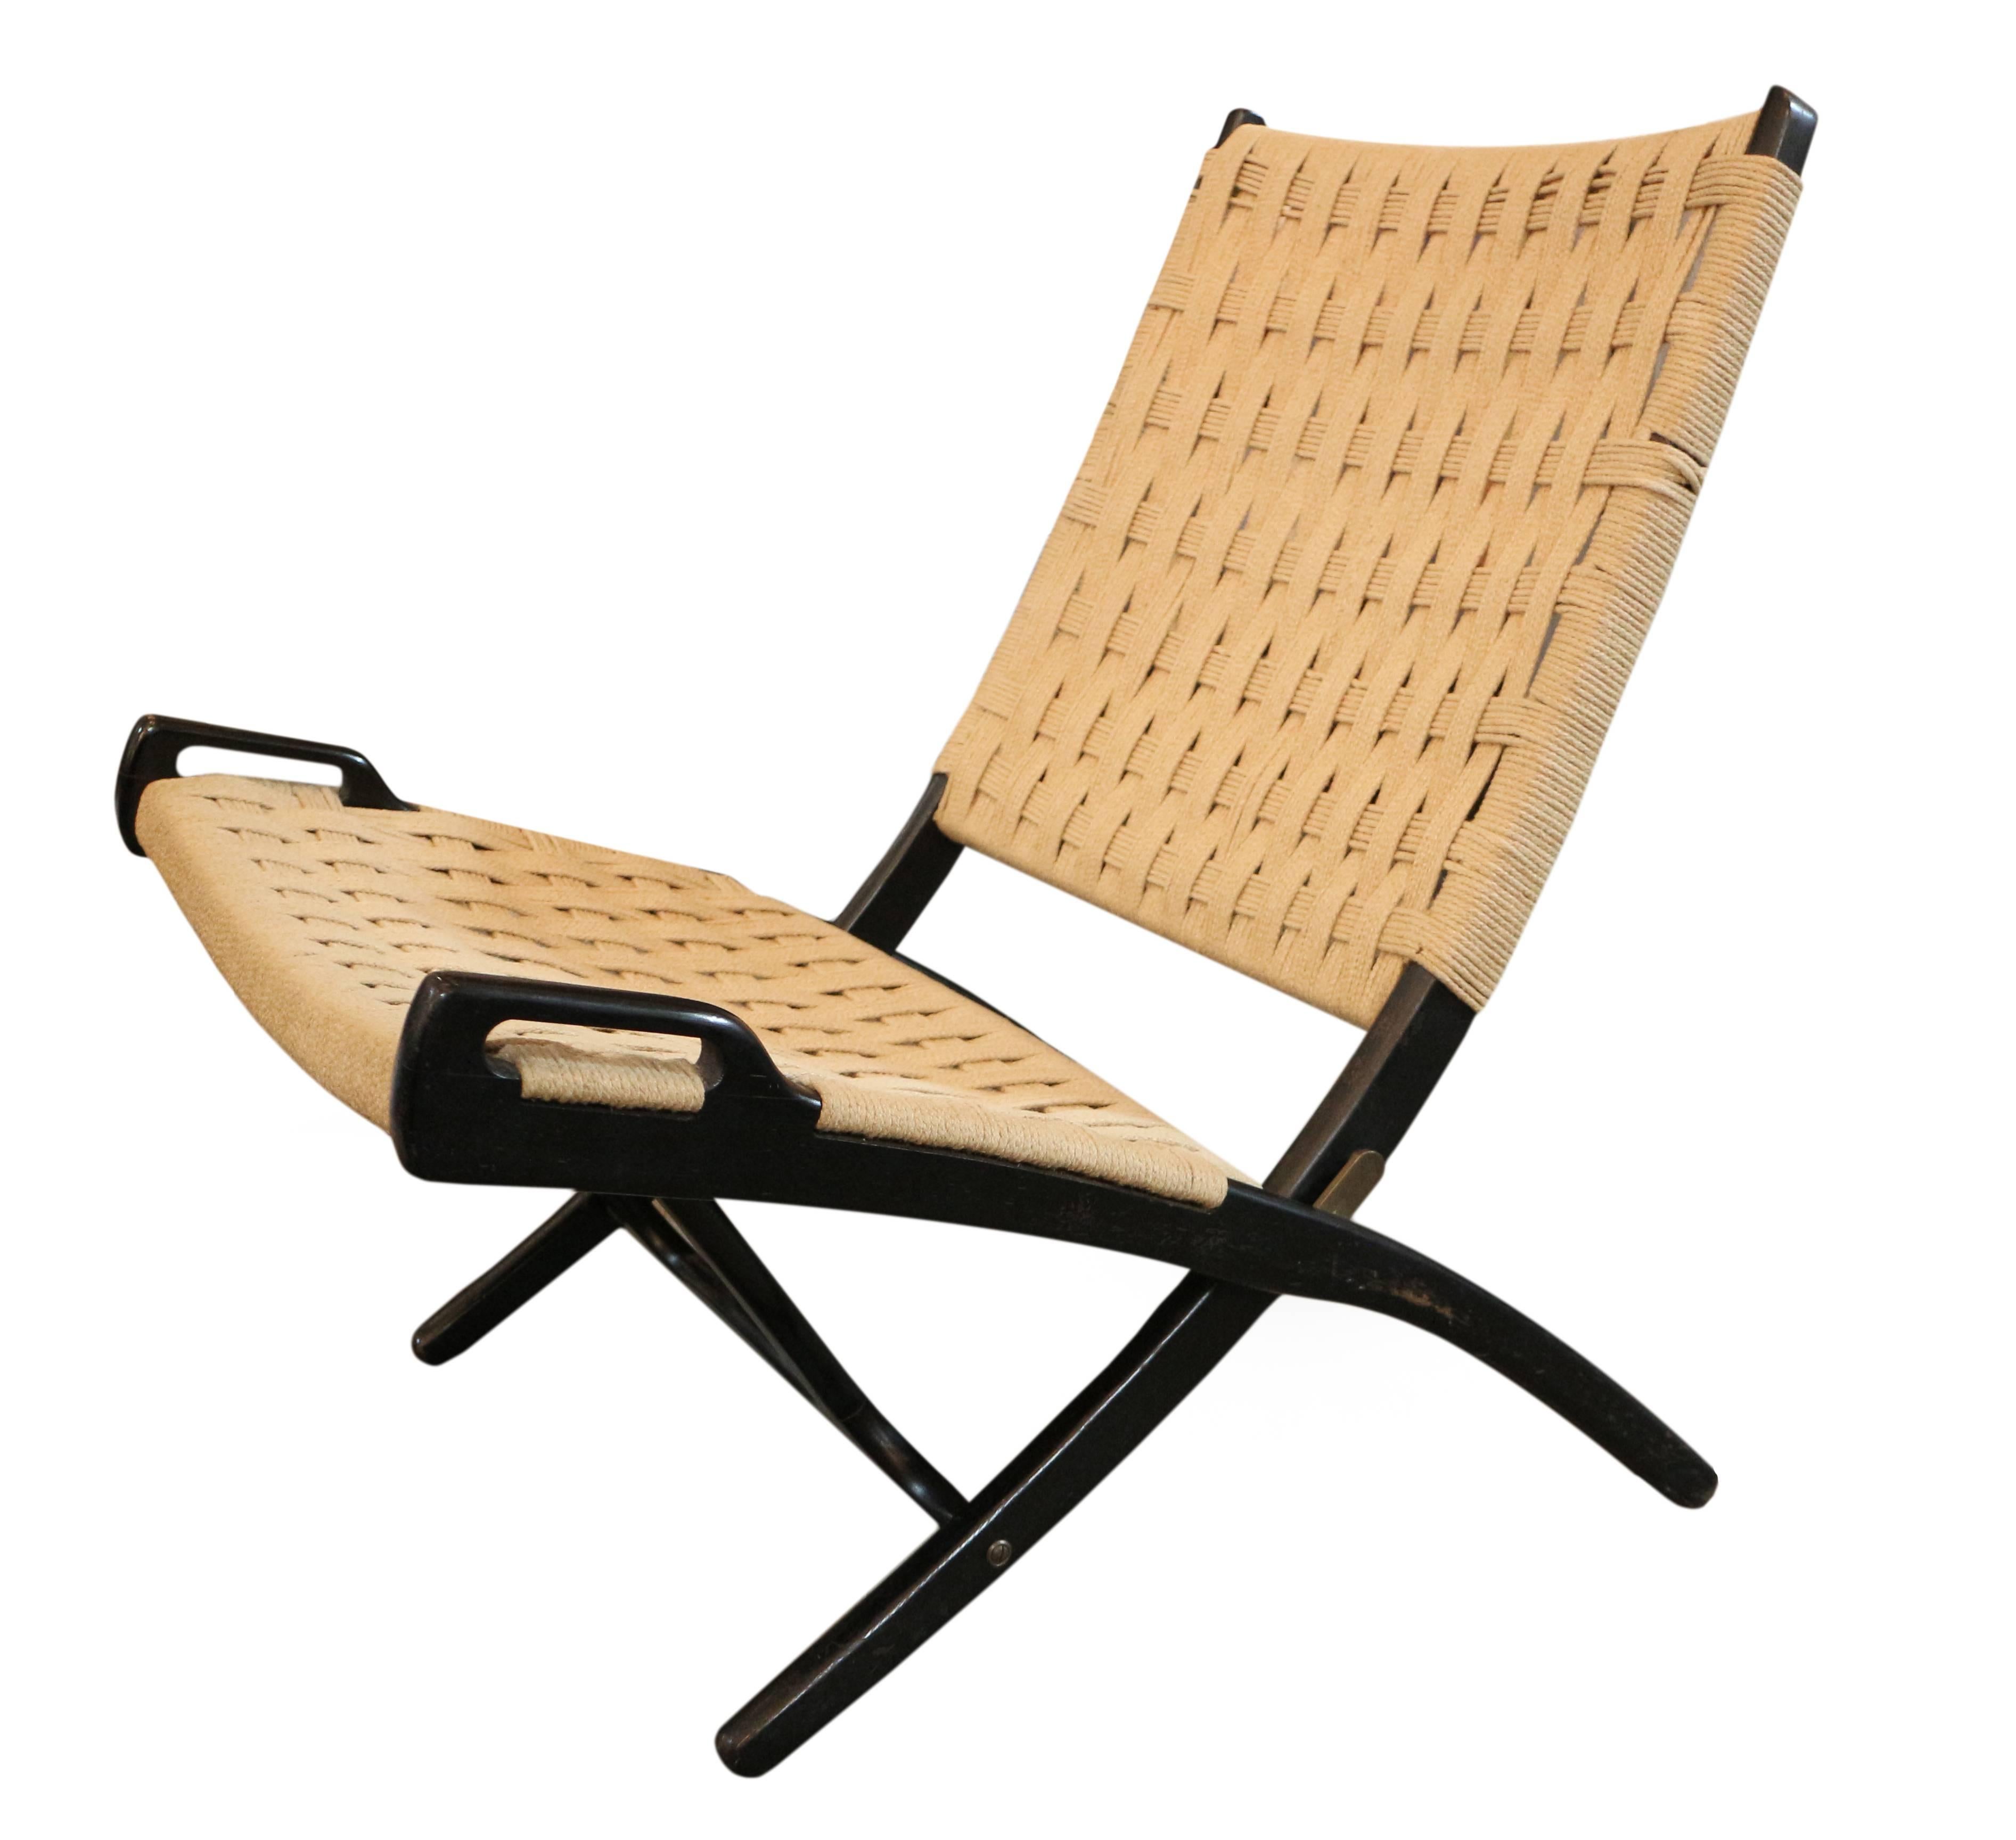 Wegner folding chair.